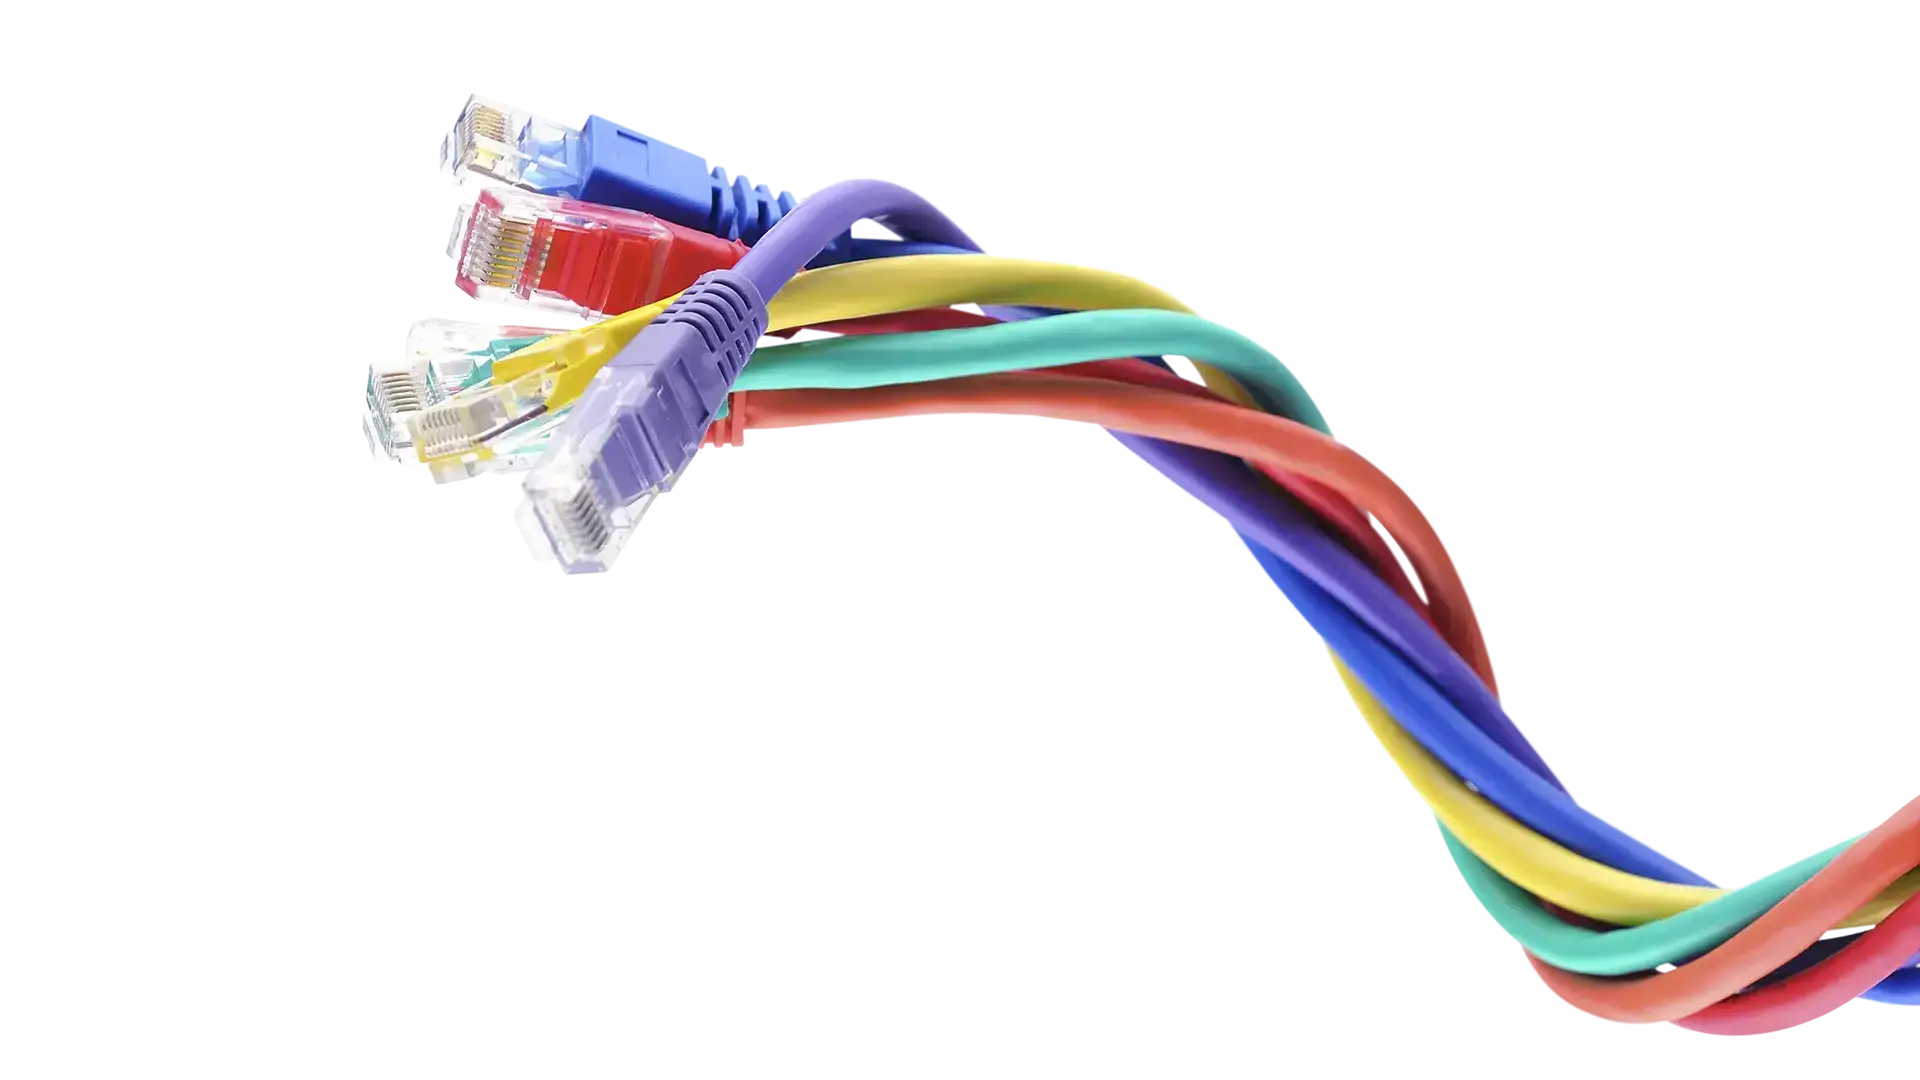 Meerkleurige kabels in groep